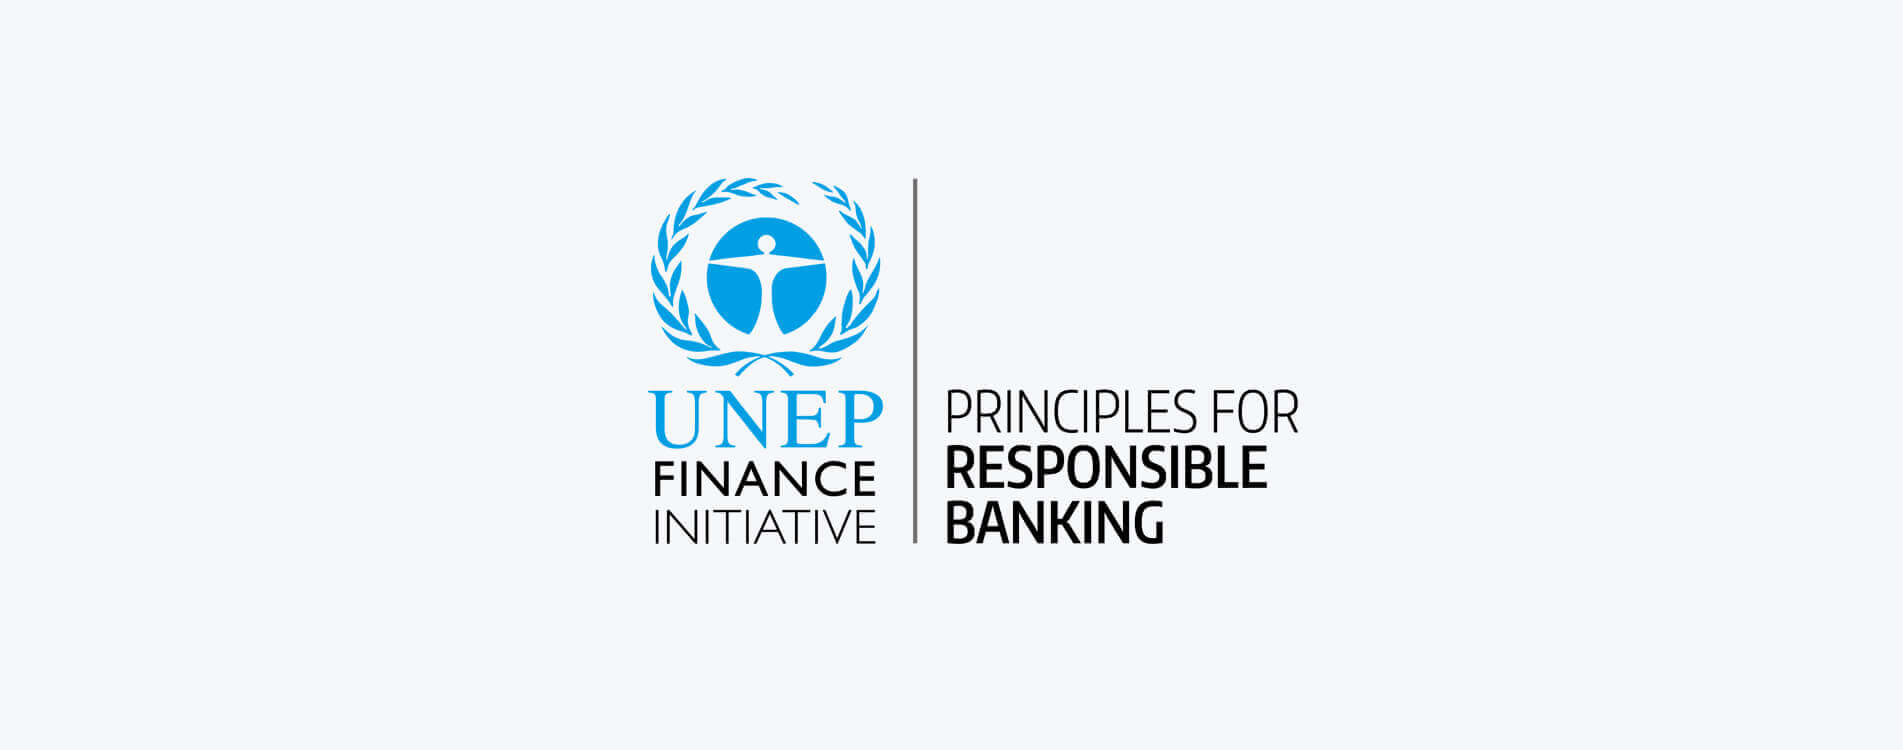 Οι 6 Αρχές Υπεύθυνης Τραπεζικής του UNEP FI | Piraeus Bank Blog